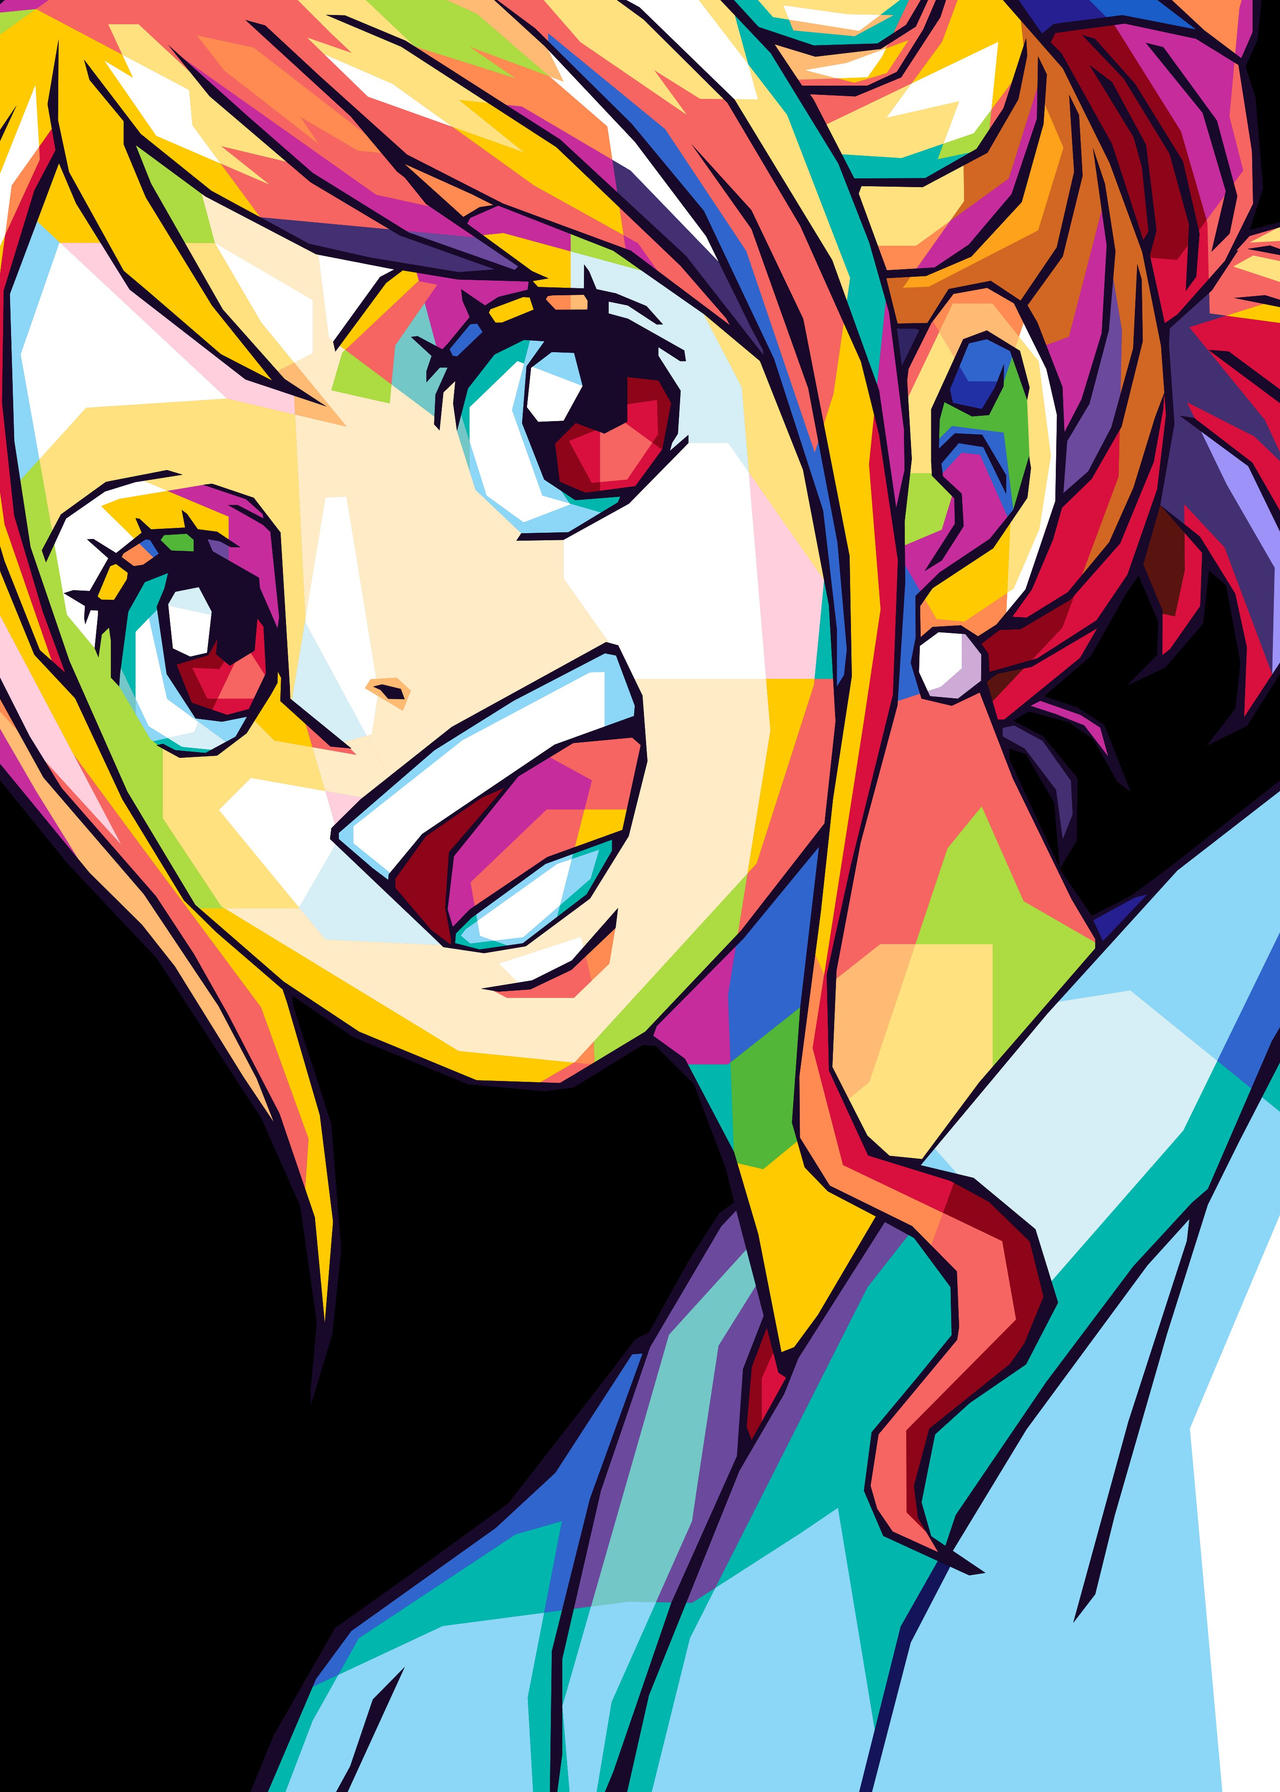 Nami One Piece by shichiroken on DeviantArt